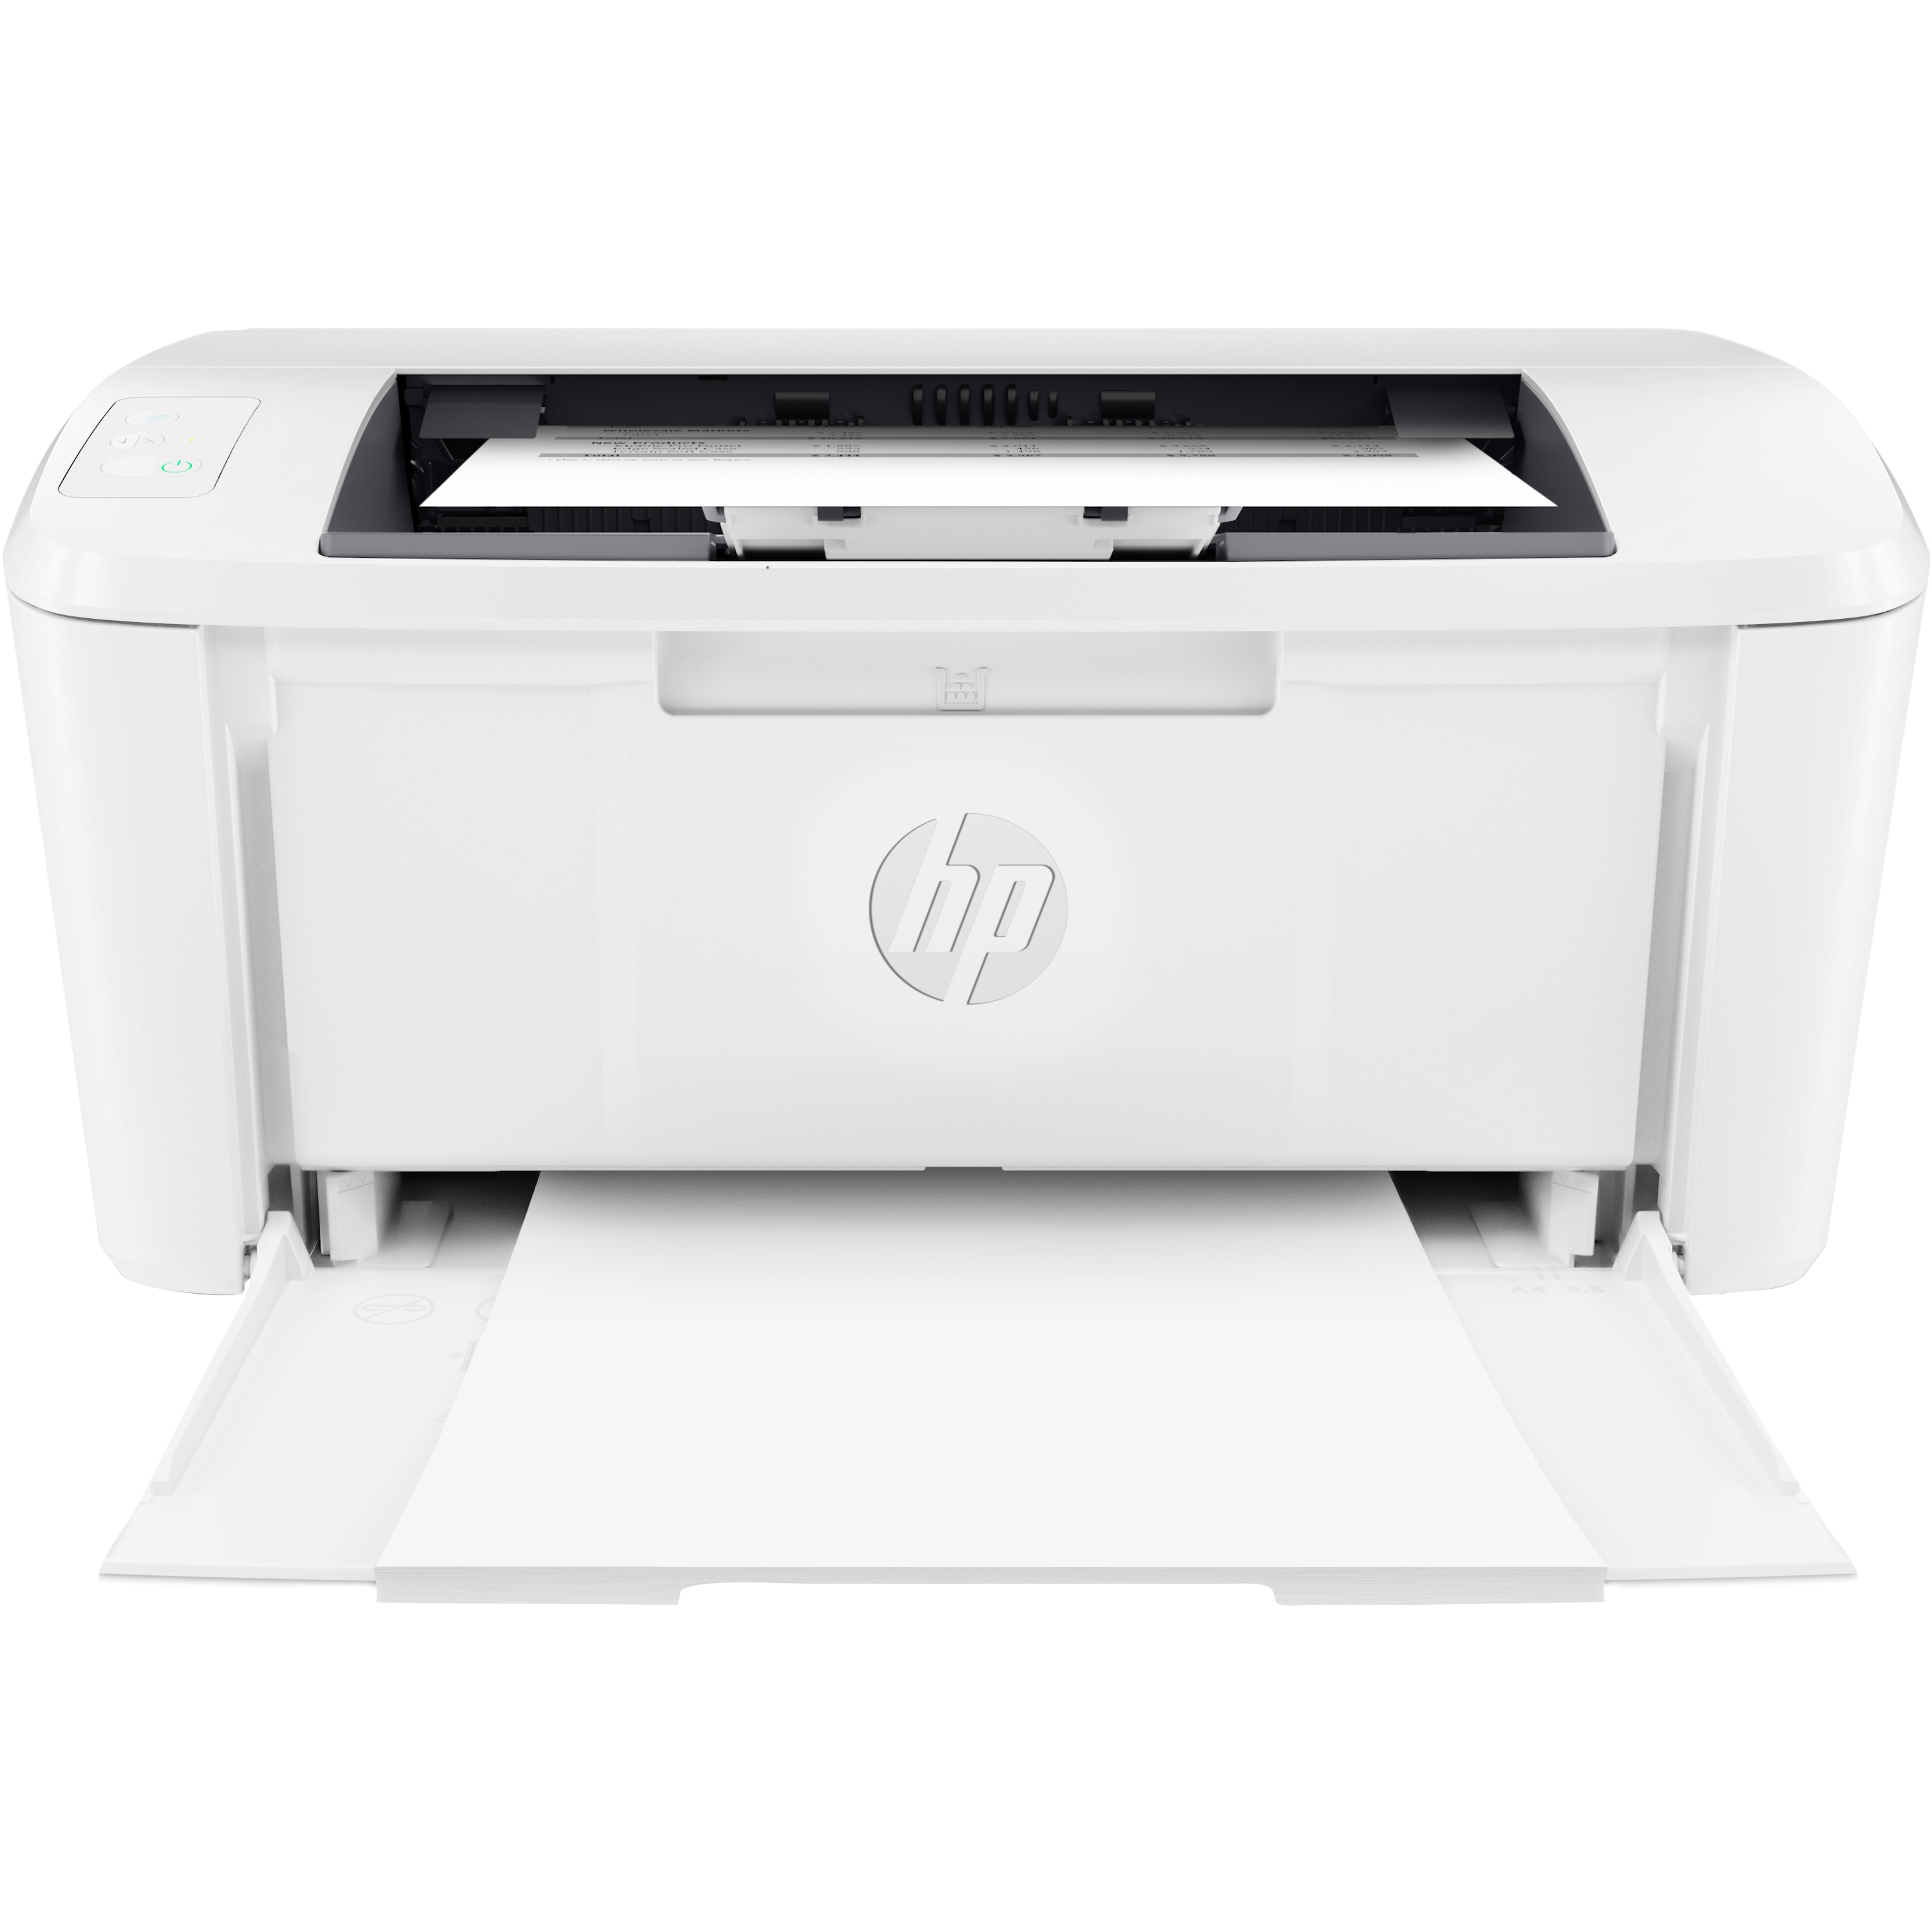 HP HP LaserJet M110we, kleinster Drucker seiner Klasse, Druckgeschwindigkeit von bis zu 20 S./Min, HP Smart-App, intuitiv und benutzerfreundlich